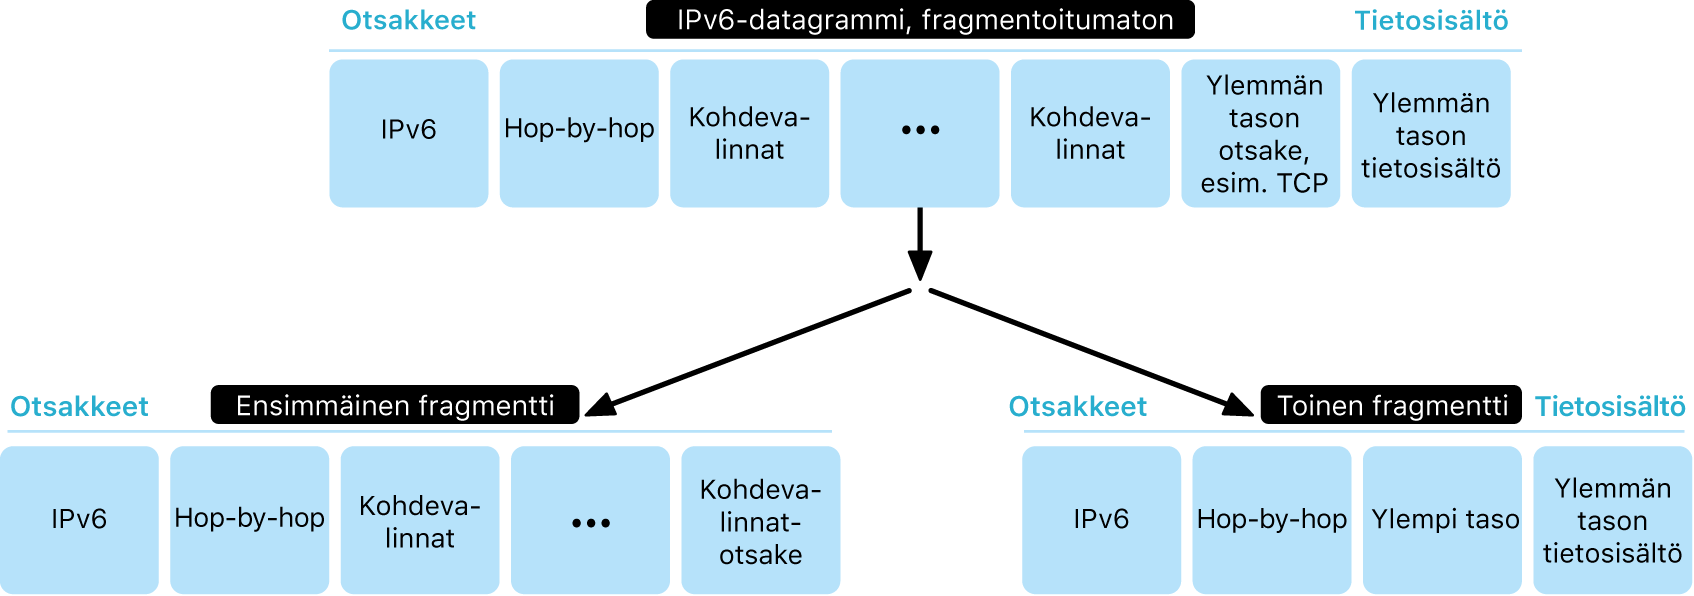 Kaavio, jossa näkyy IPv6-datagrammi kahdessa tasossa: osioimattomana ja sen alapuolella osissa.